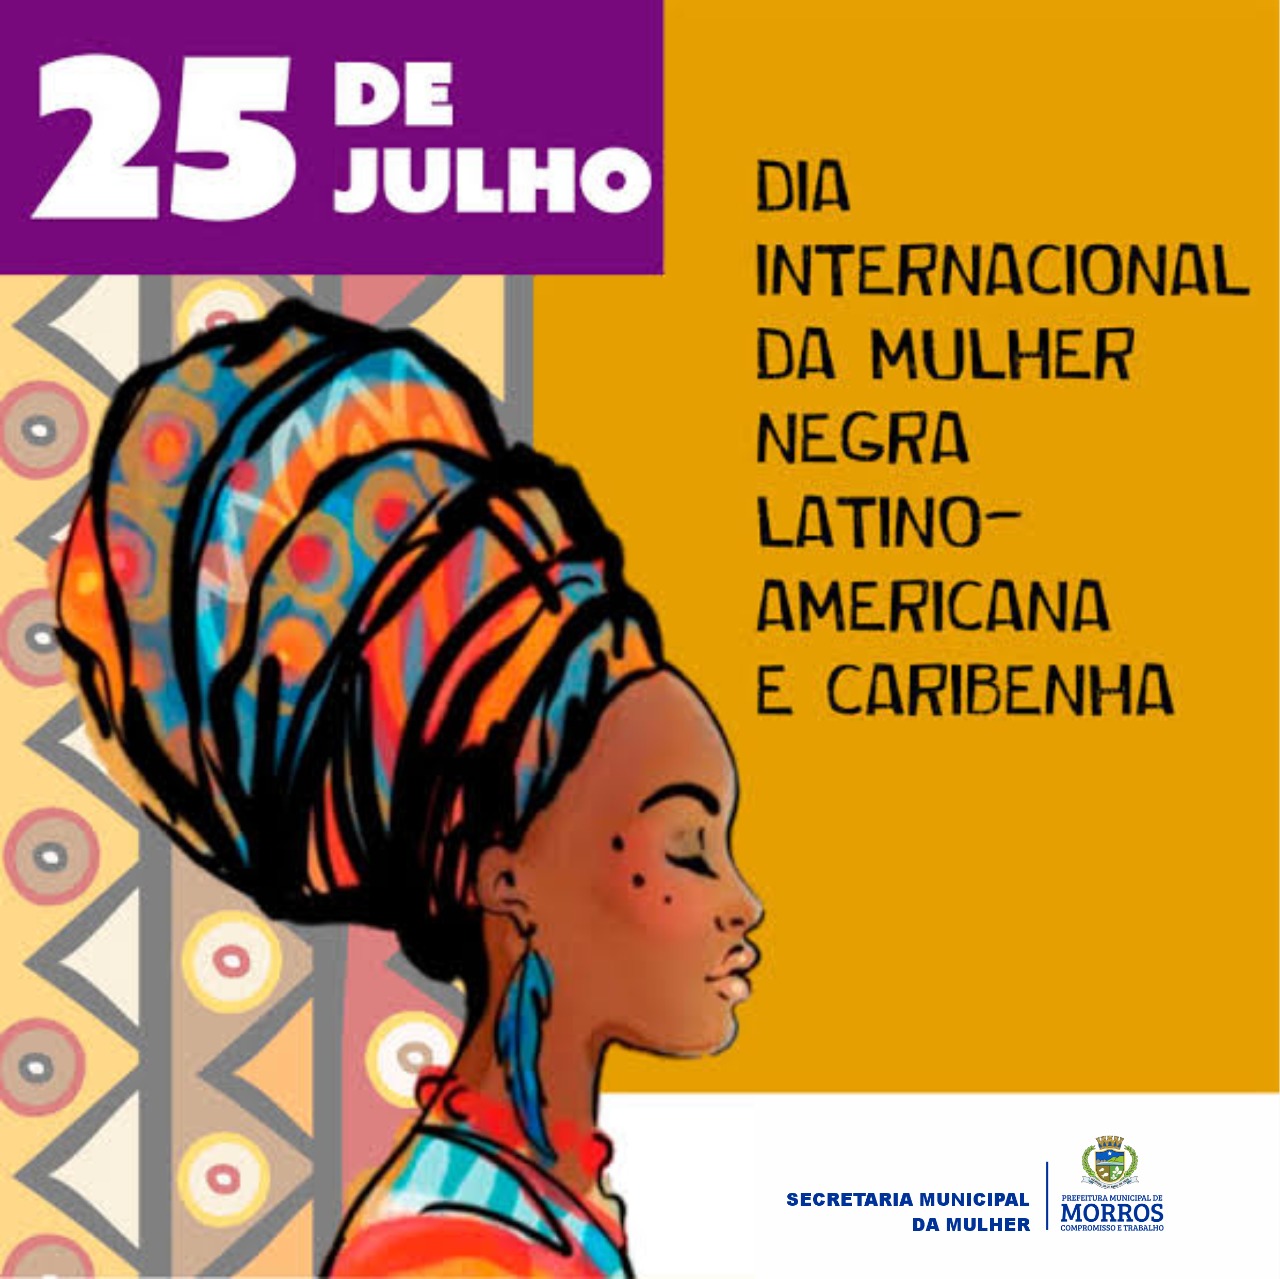 Dia da Mulher Negra é o dia 25 de julho, instituído pelo governo do Brasil pela Lei nº 12.987/2014 em 2014